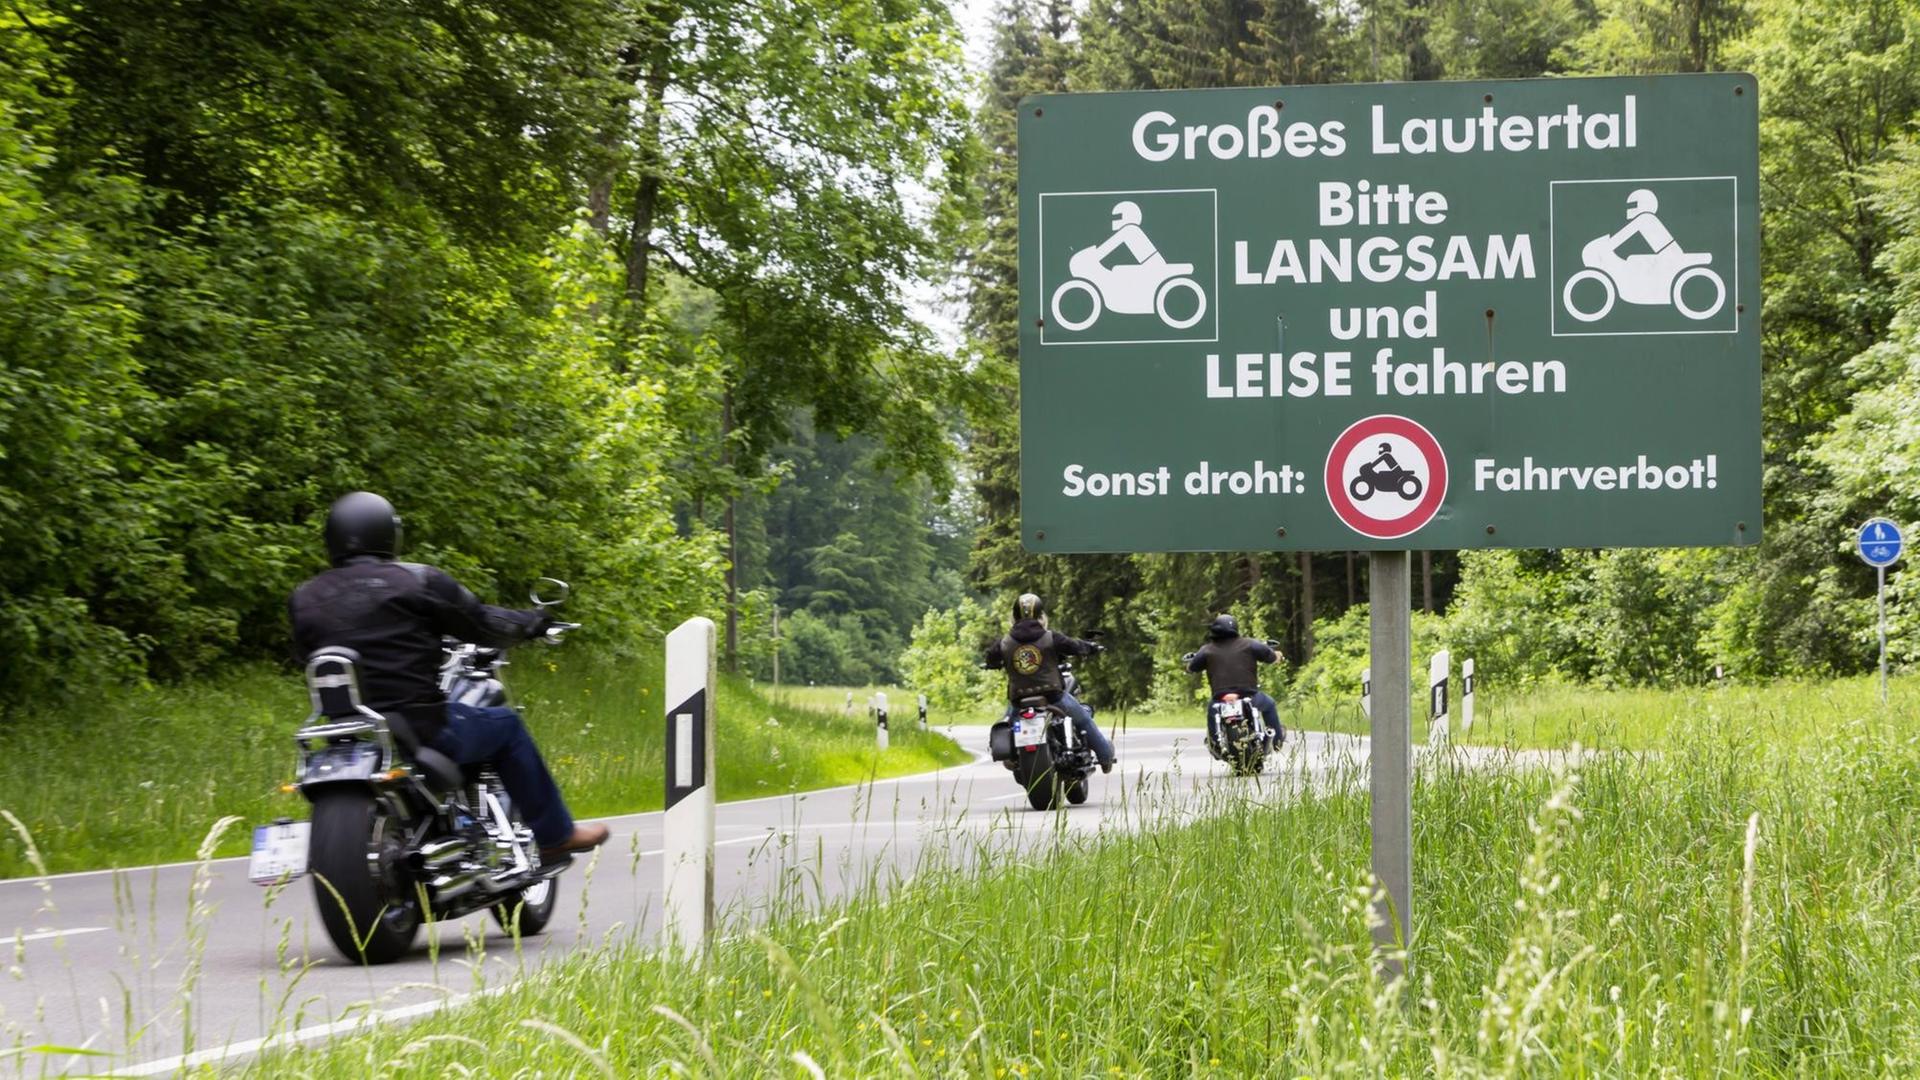 27.05.2018: Das idyllische Lautertal zwischen Münsingen und Hayingen zieht an jedem Wochenende Motorradfahrer an. Zum Leidwesen der Anwohner.